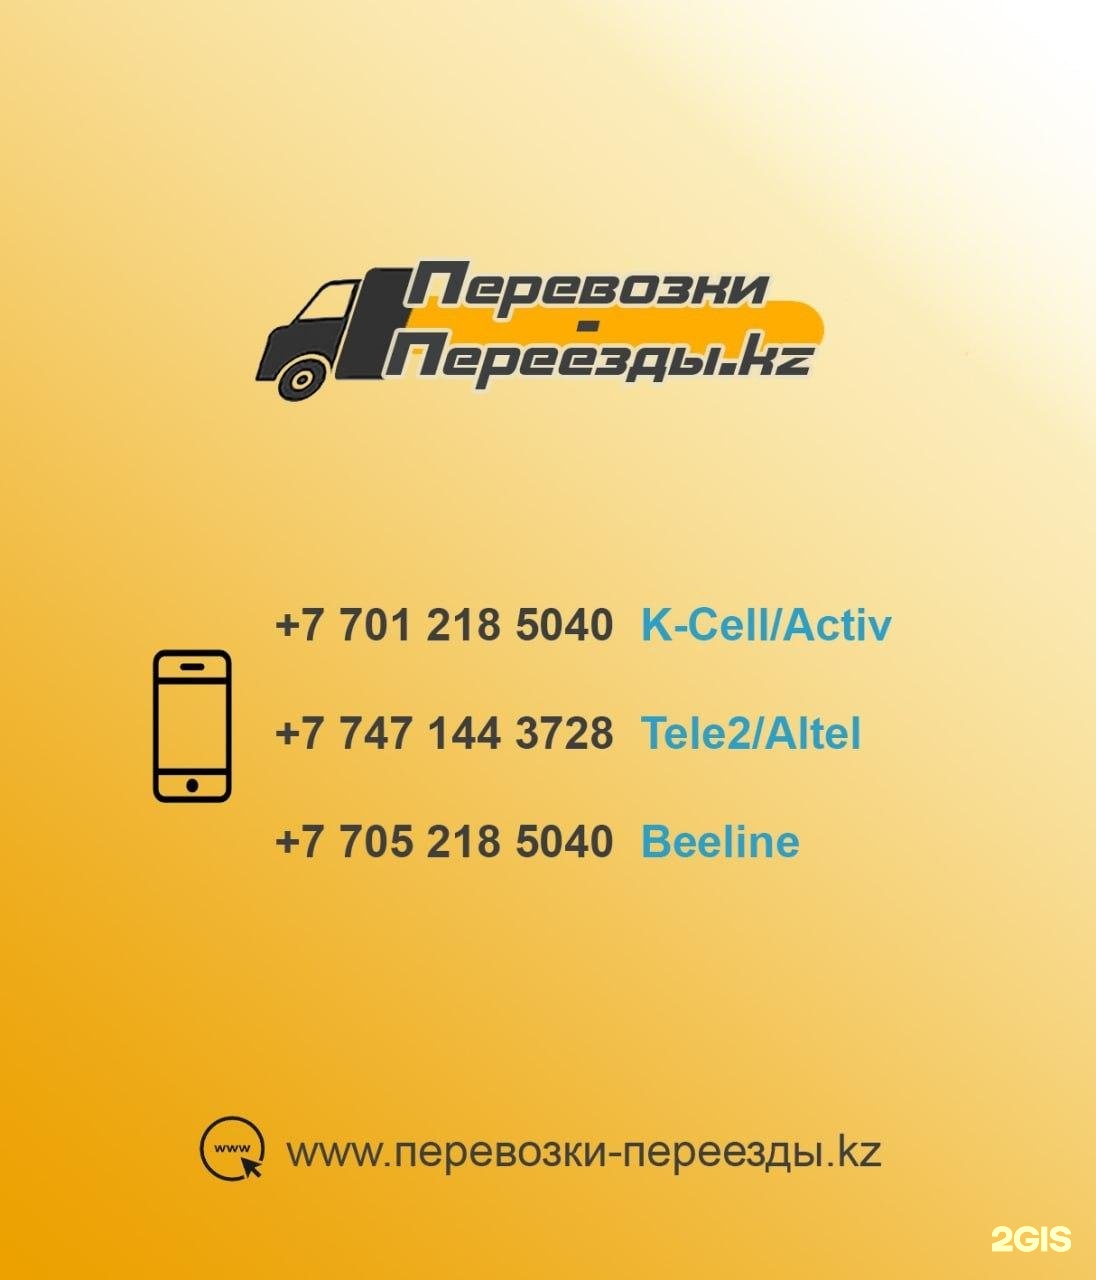 Такси димитровград номера телефонов